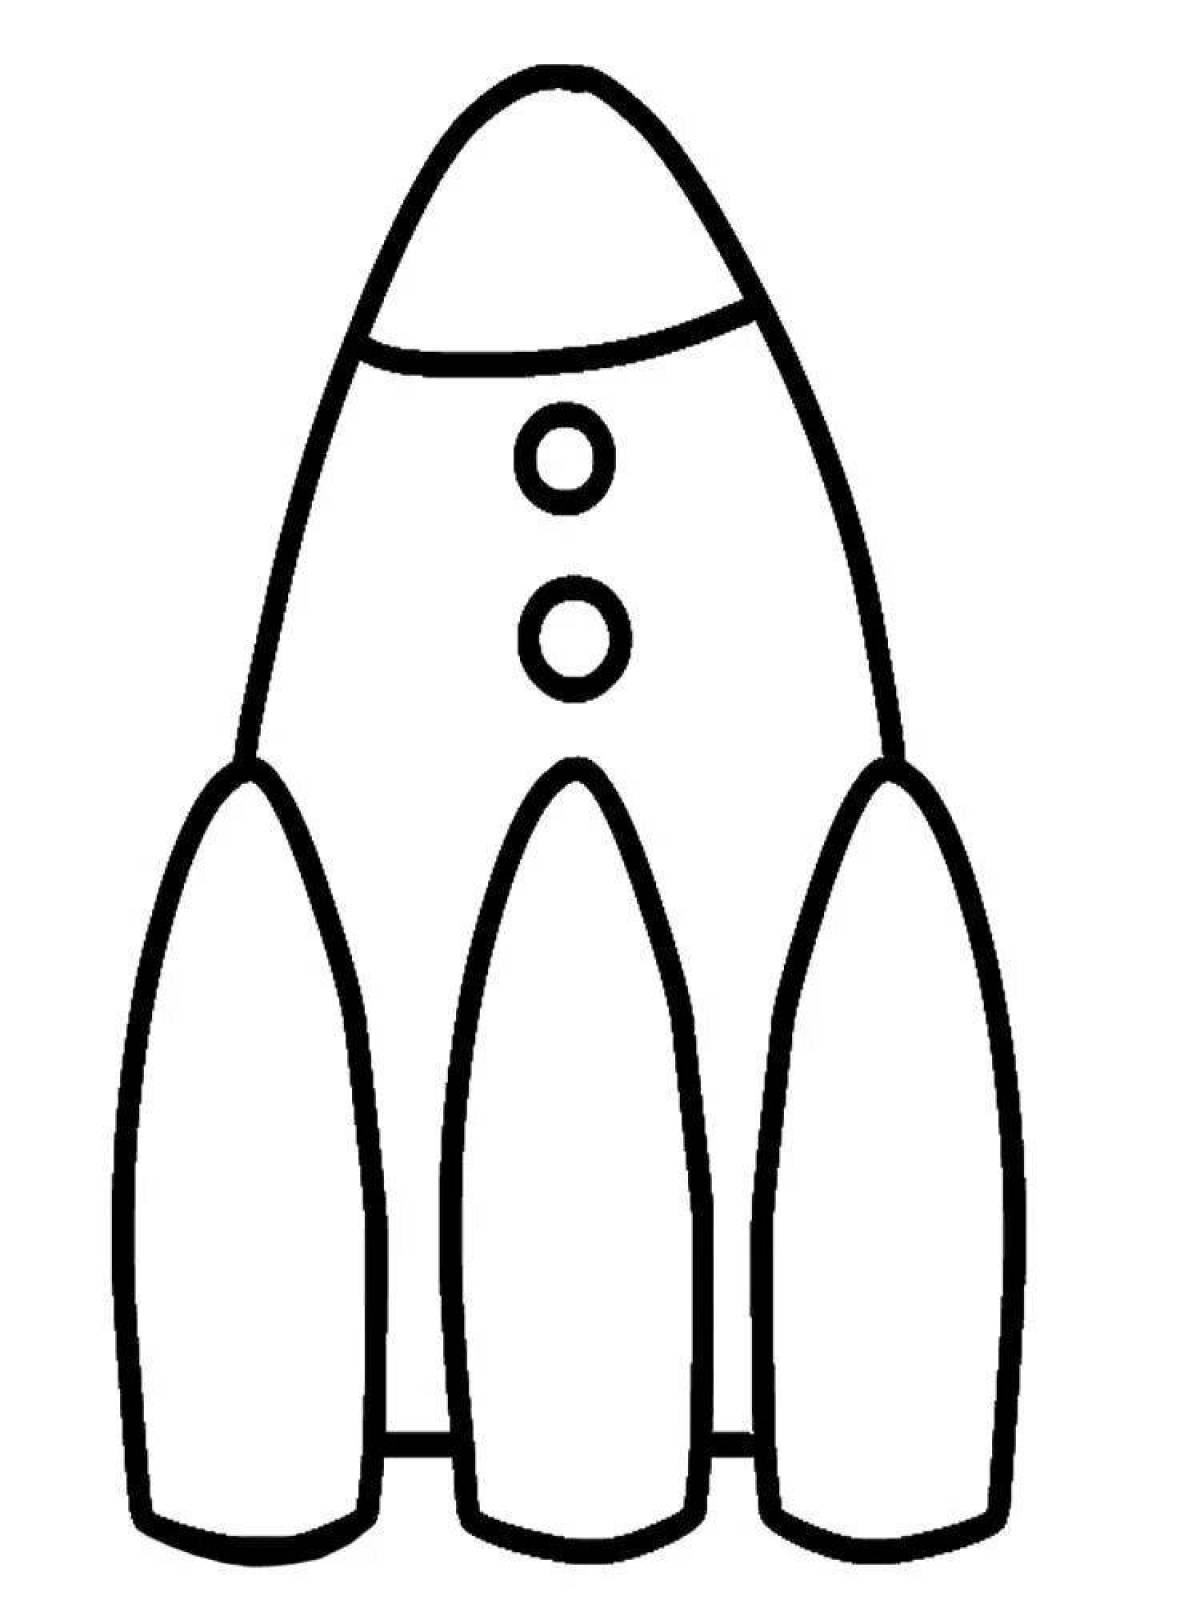 Раскраска ракета 2 3 года. Раскраскаидля малышей. Ракета раскраска. Ракета раскраска для детей. Раскраски длы я малышей.